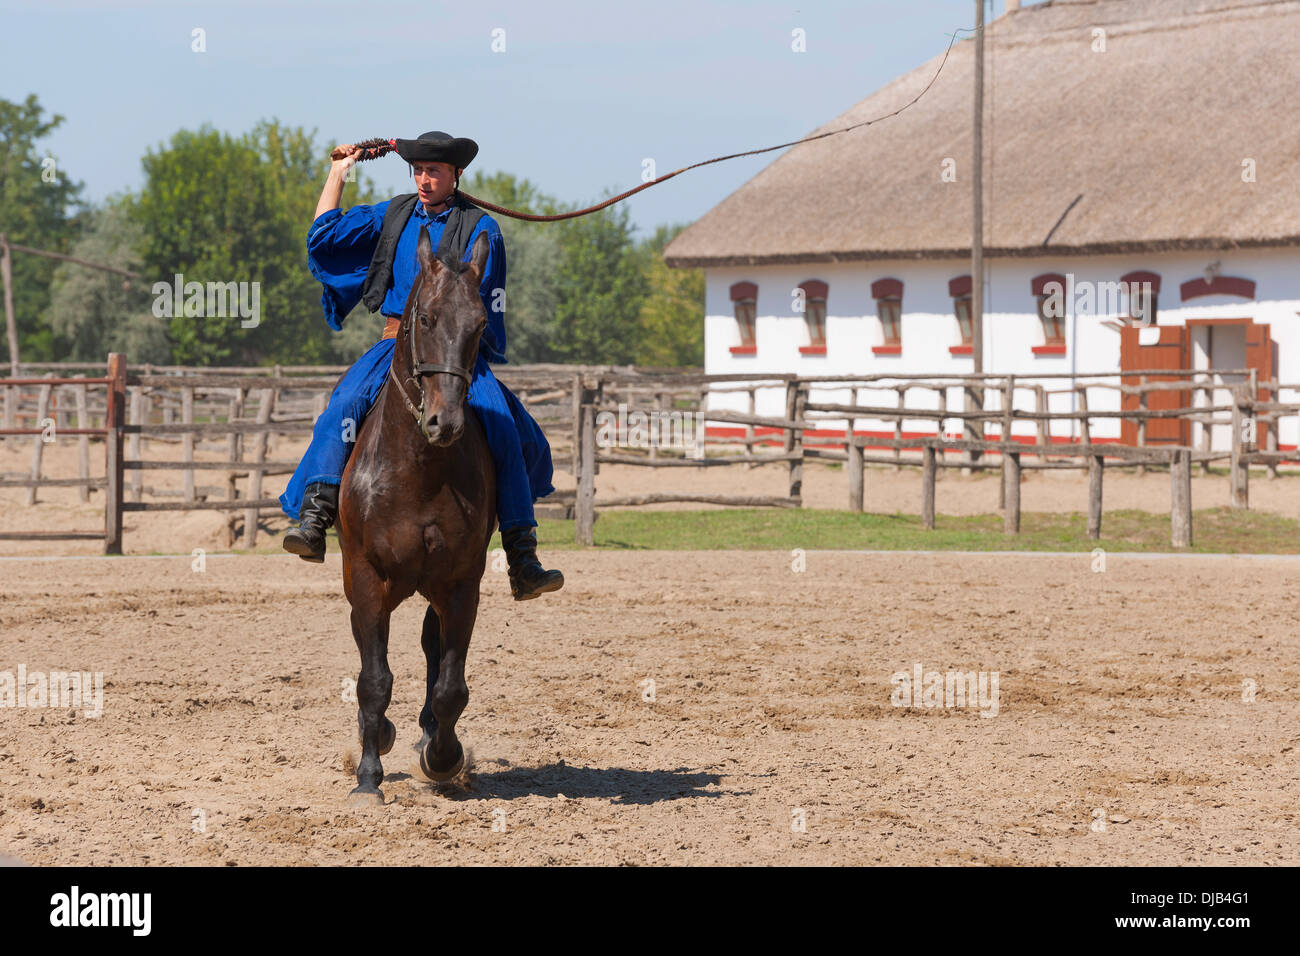 Csikós on horseback, Tanyacsárda Stud, Kecskemét, Puszta, Hungary Stock Photo